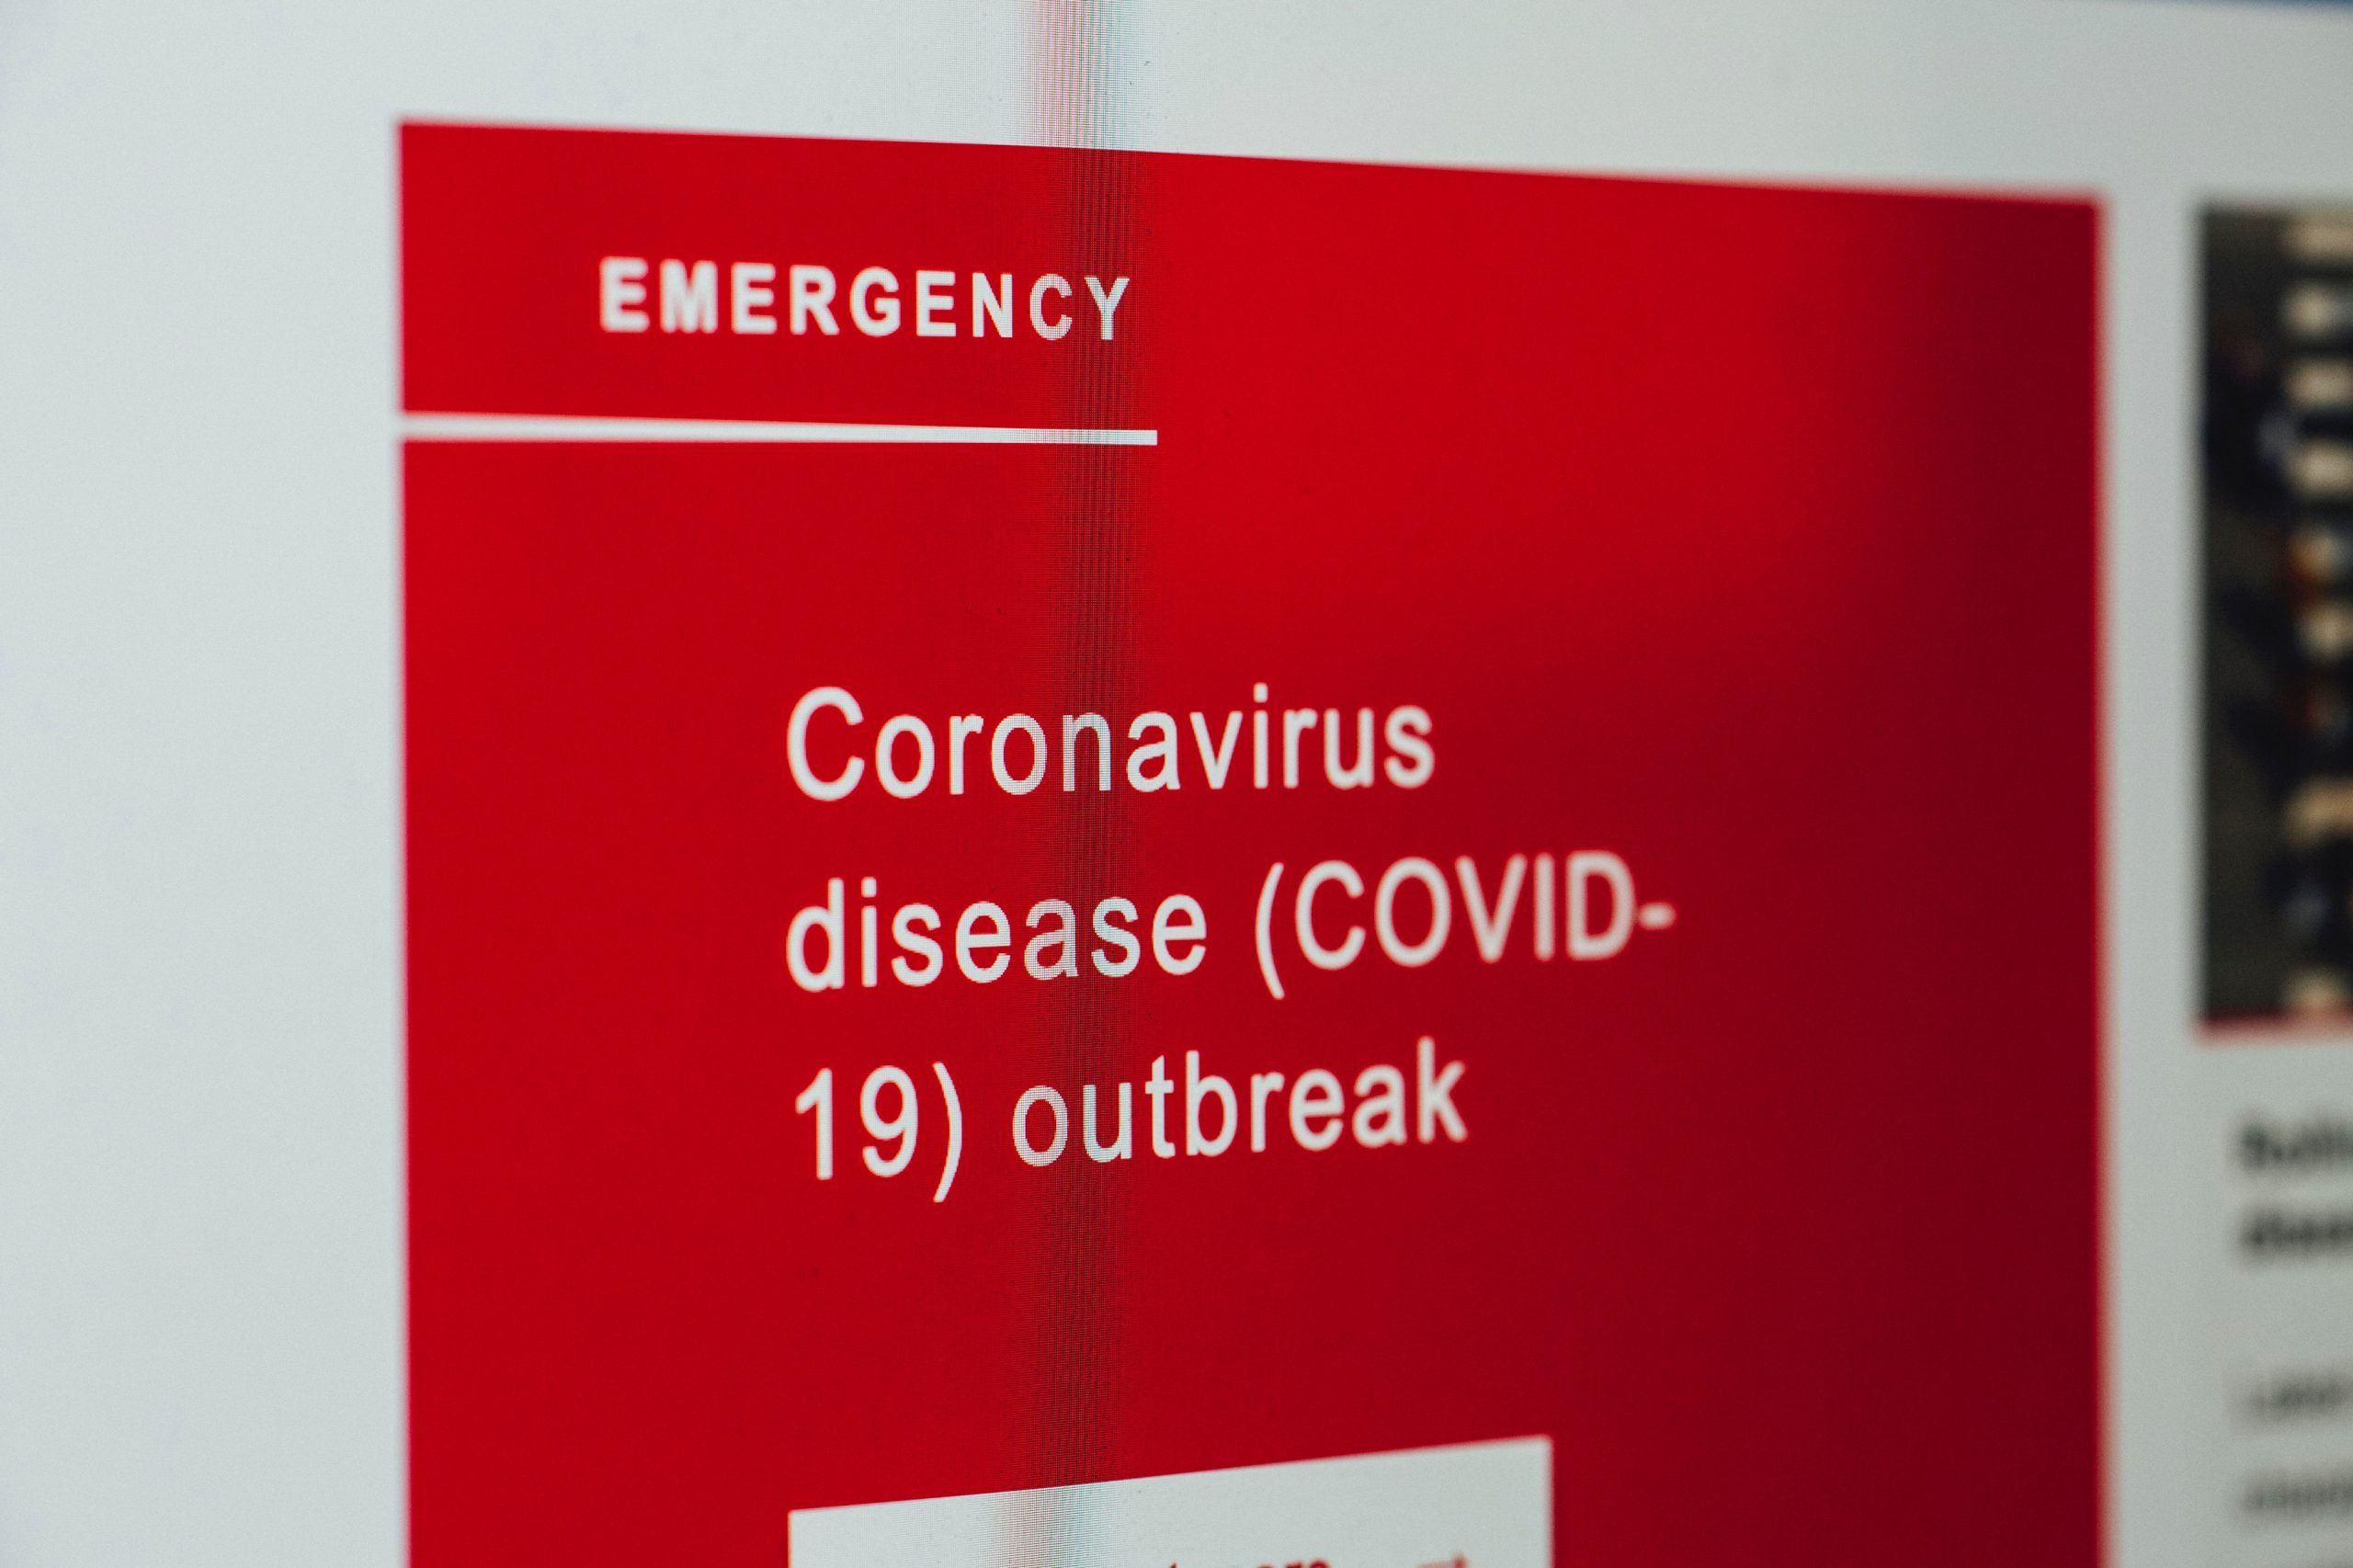 Coronavirus on screen